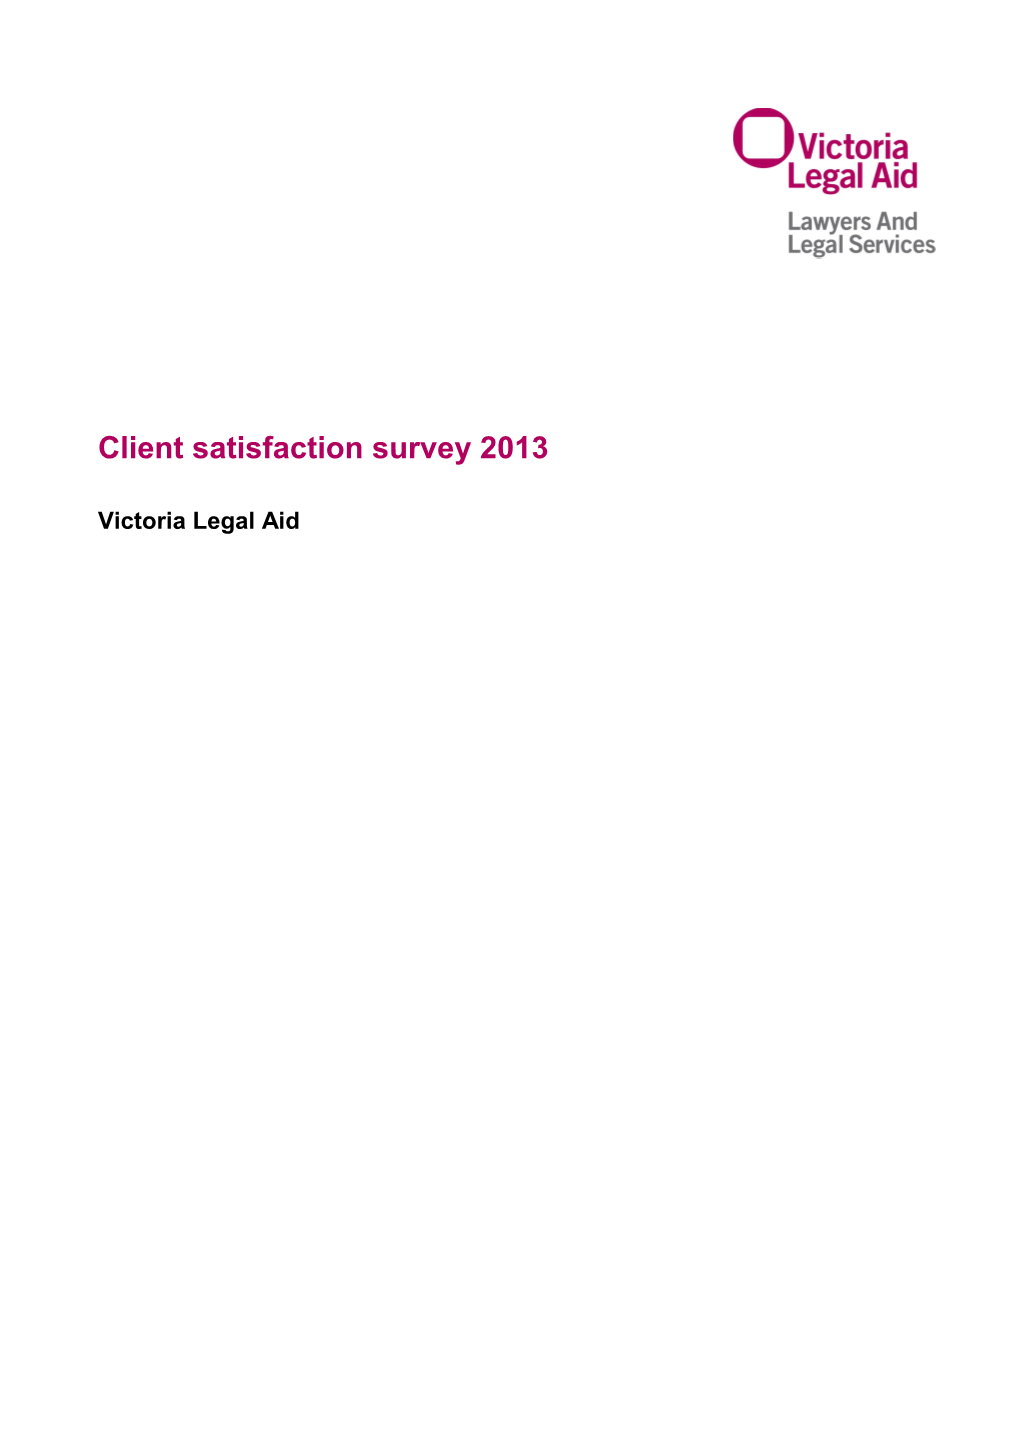 Client Satisfaction Survey 2013